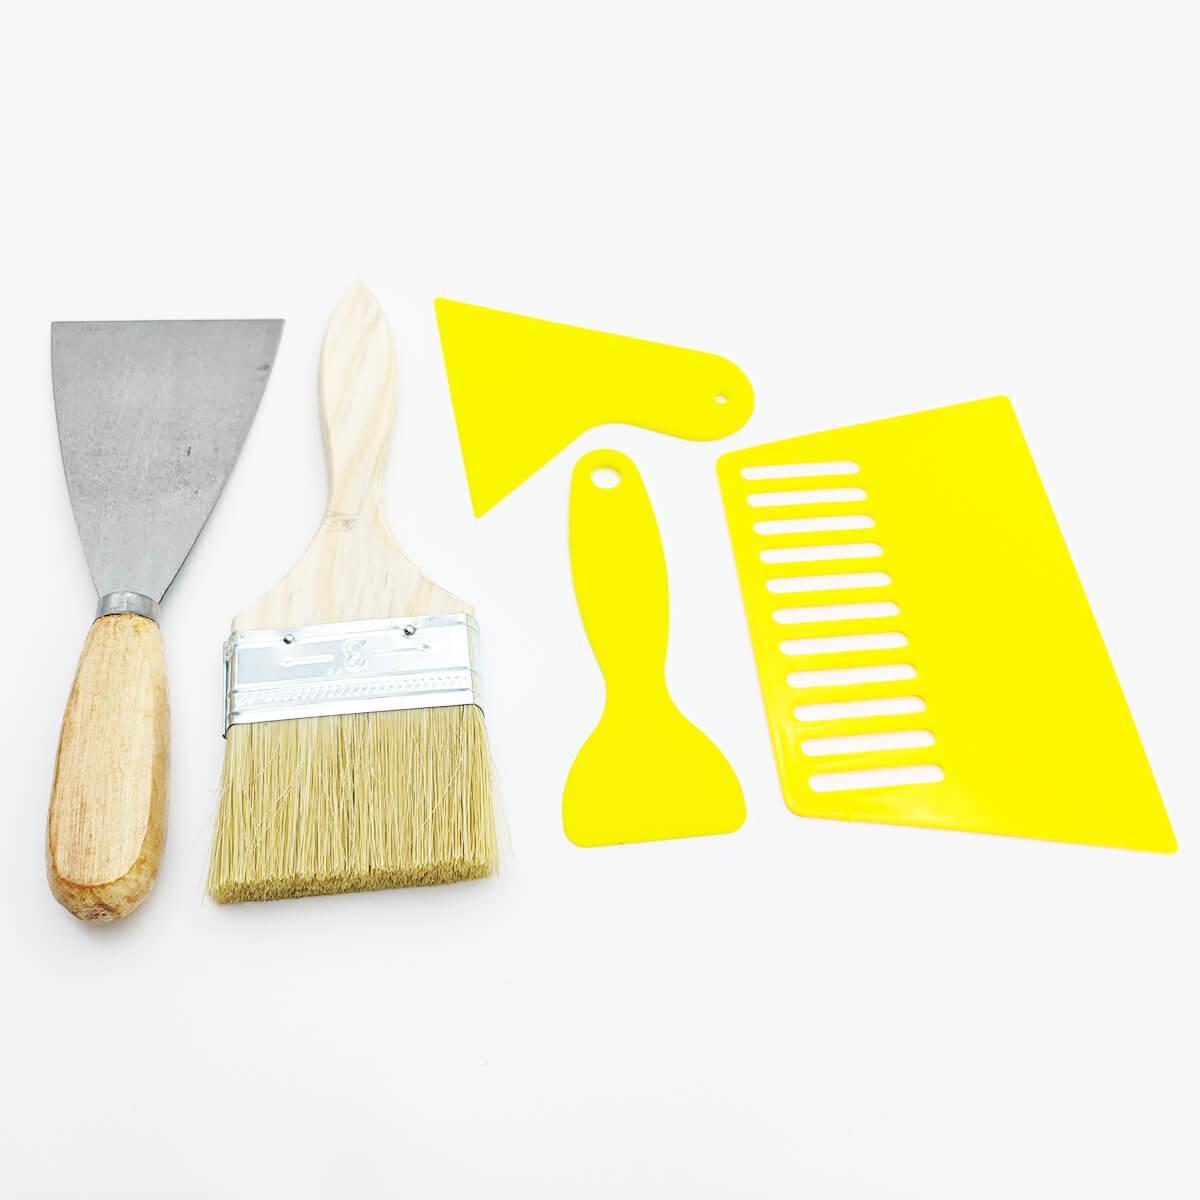 Paint Tool Kit for Tufting | LetsTuft